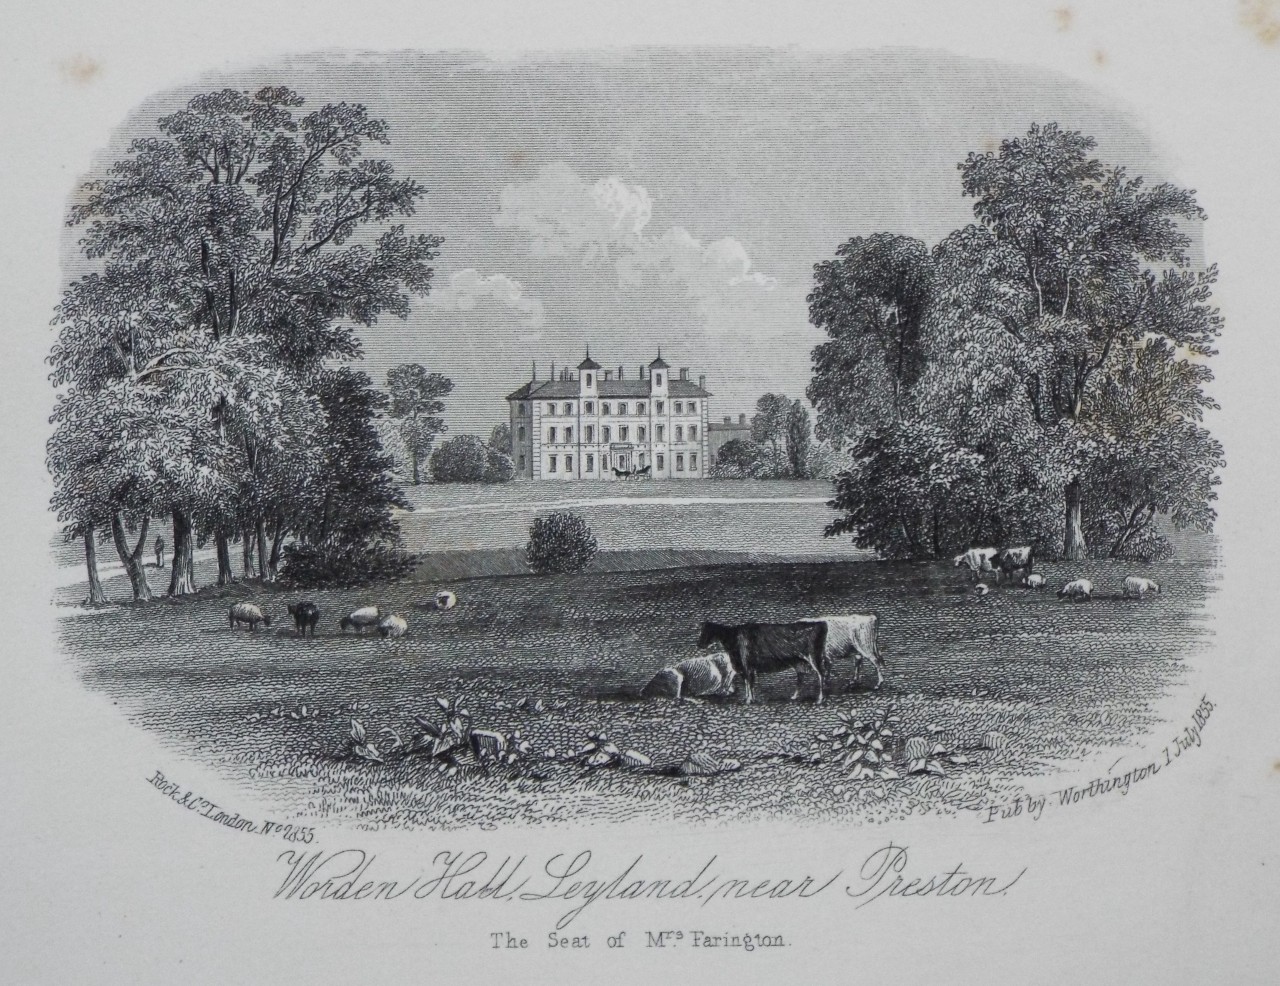 Steel Vignette - Worden Hall, Leyland, near Preston. The Seat of Mrs Farington. - Rock